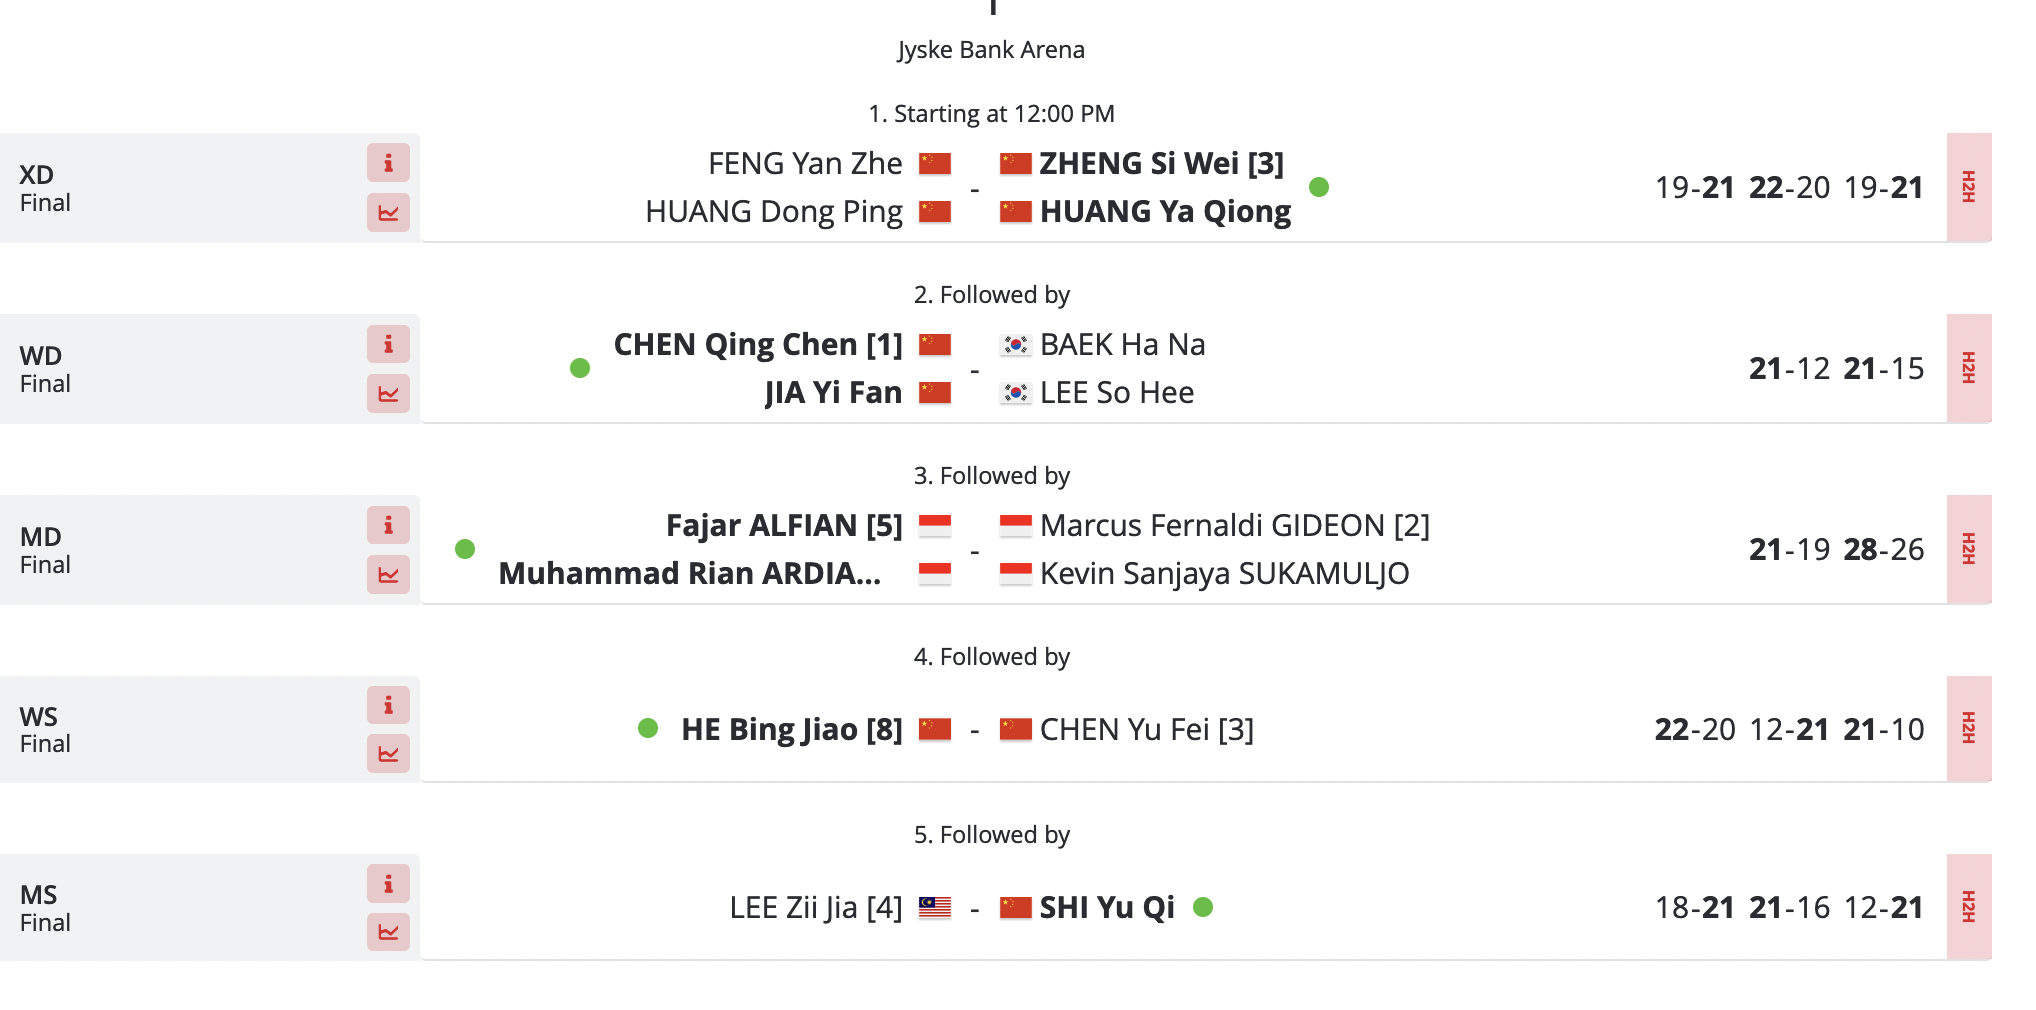 Denmark Open Badminton Shi Yu Qi, He Bing Jiao wins titles as Chinese players dominate in DENMARK Open Watch HIGHLIGHTS